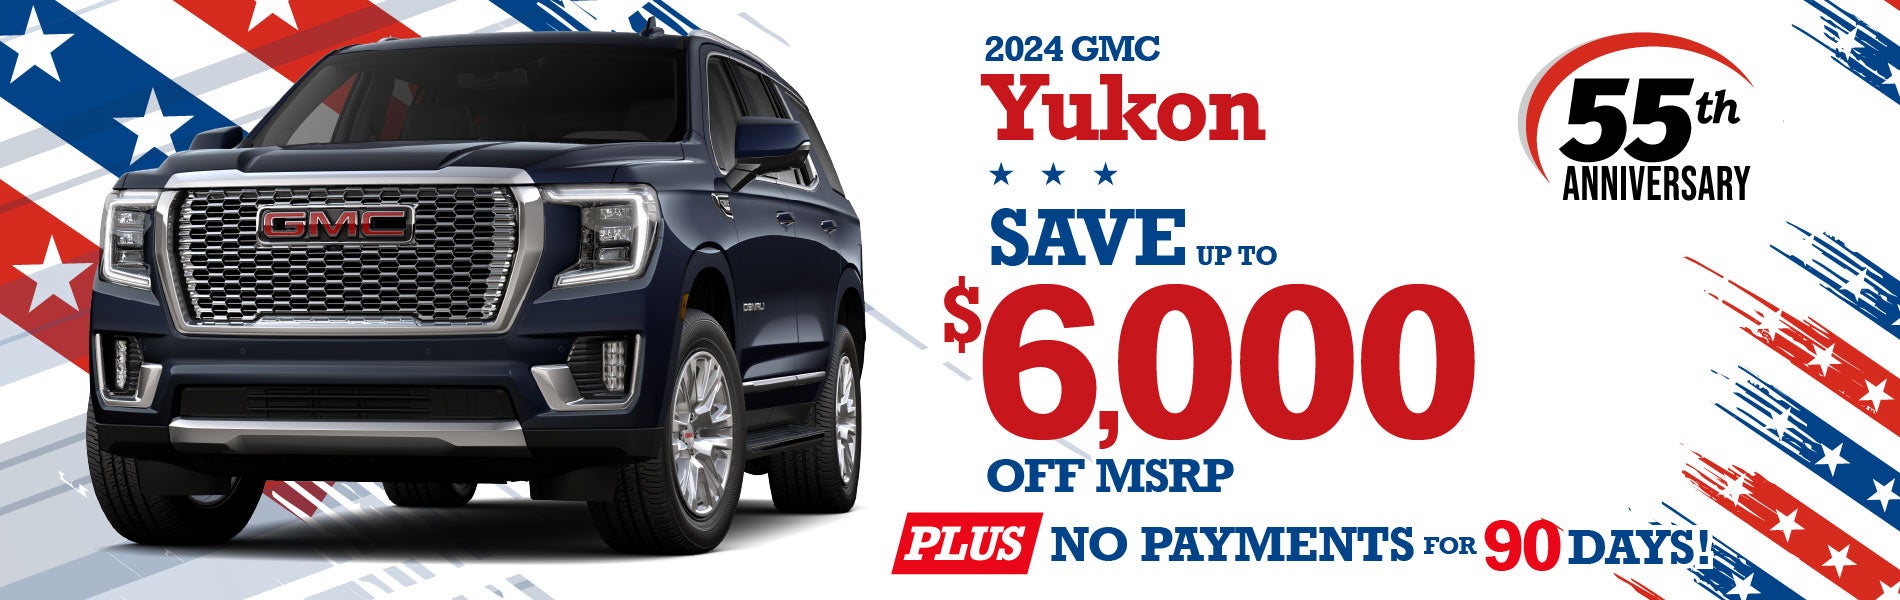 2024 GMC Yukon - SAVE up to $6000